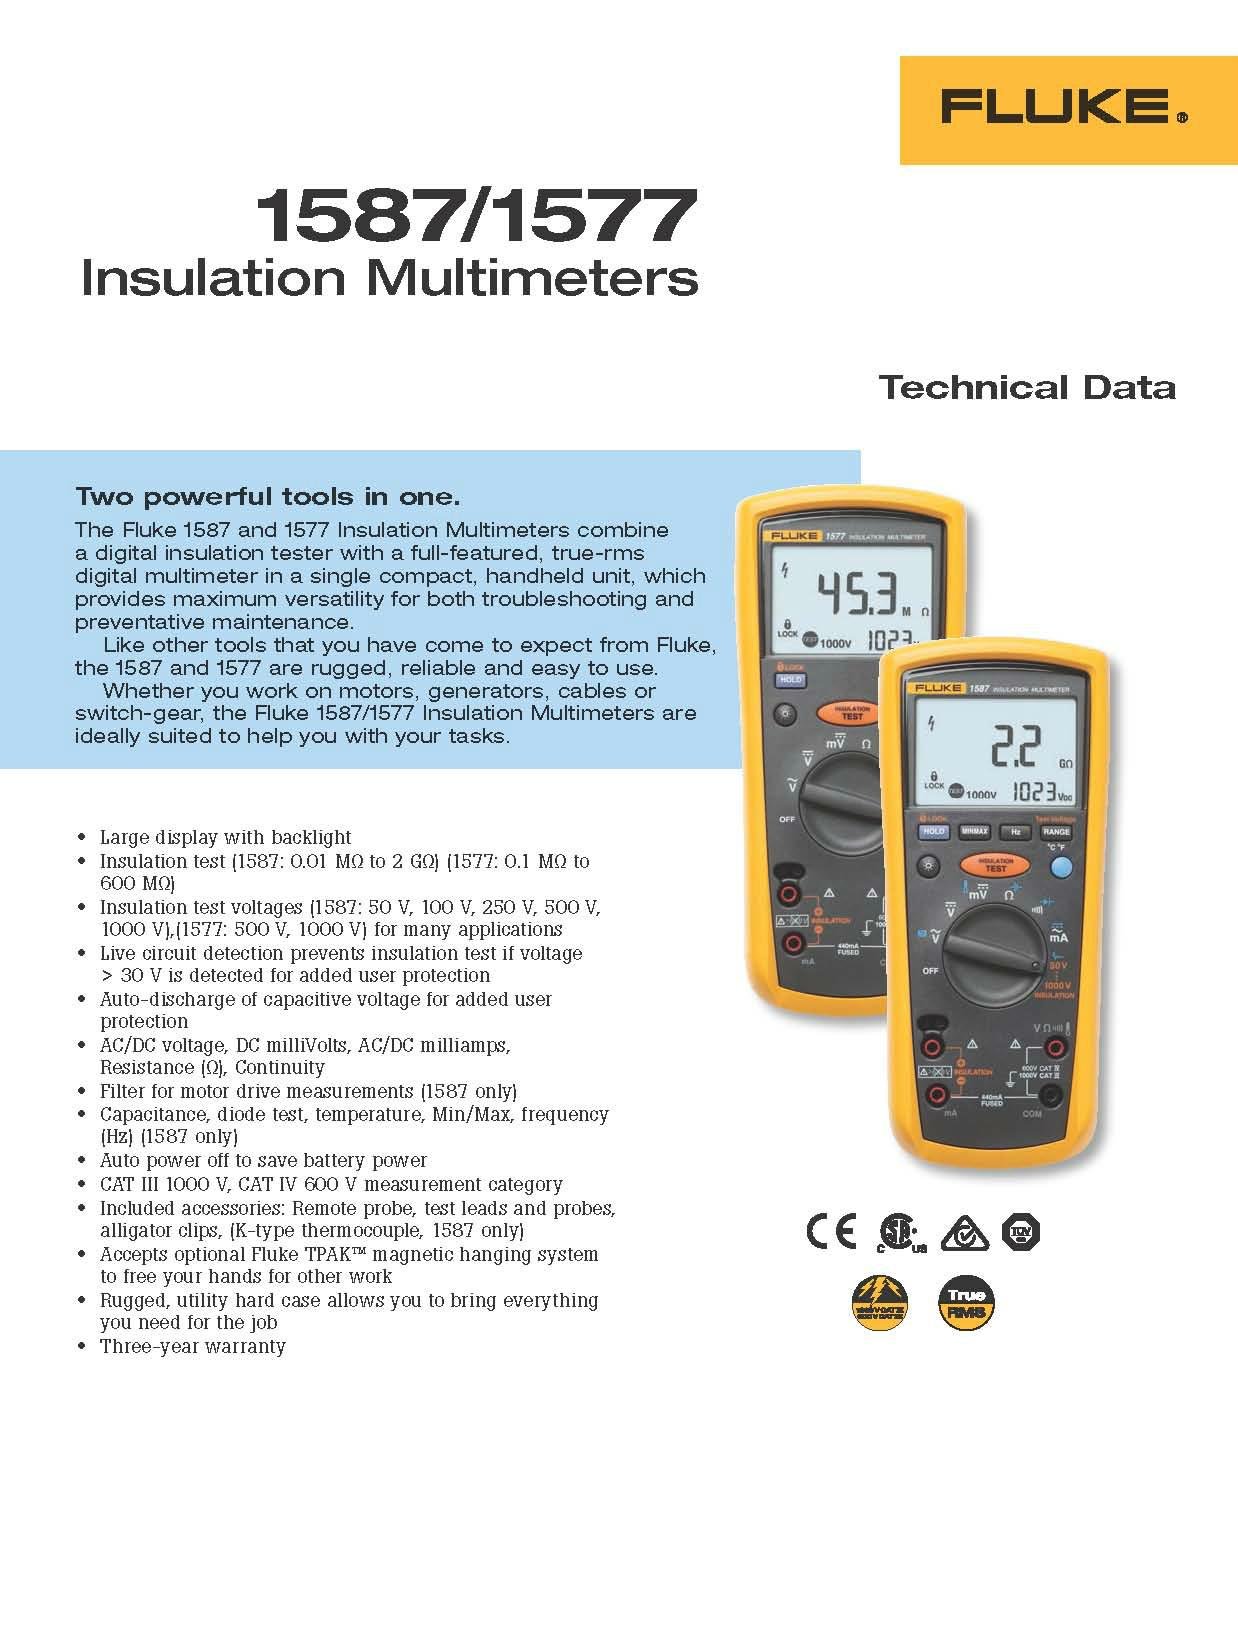 Insulation Multimeters